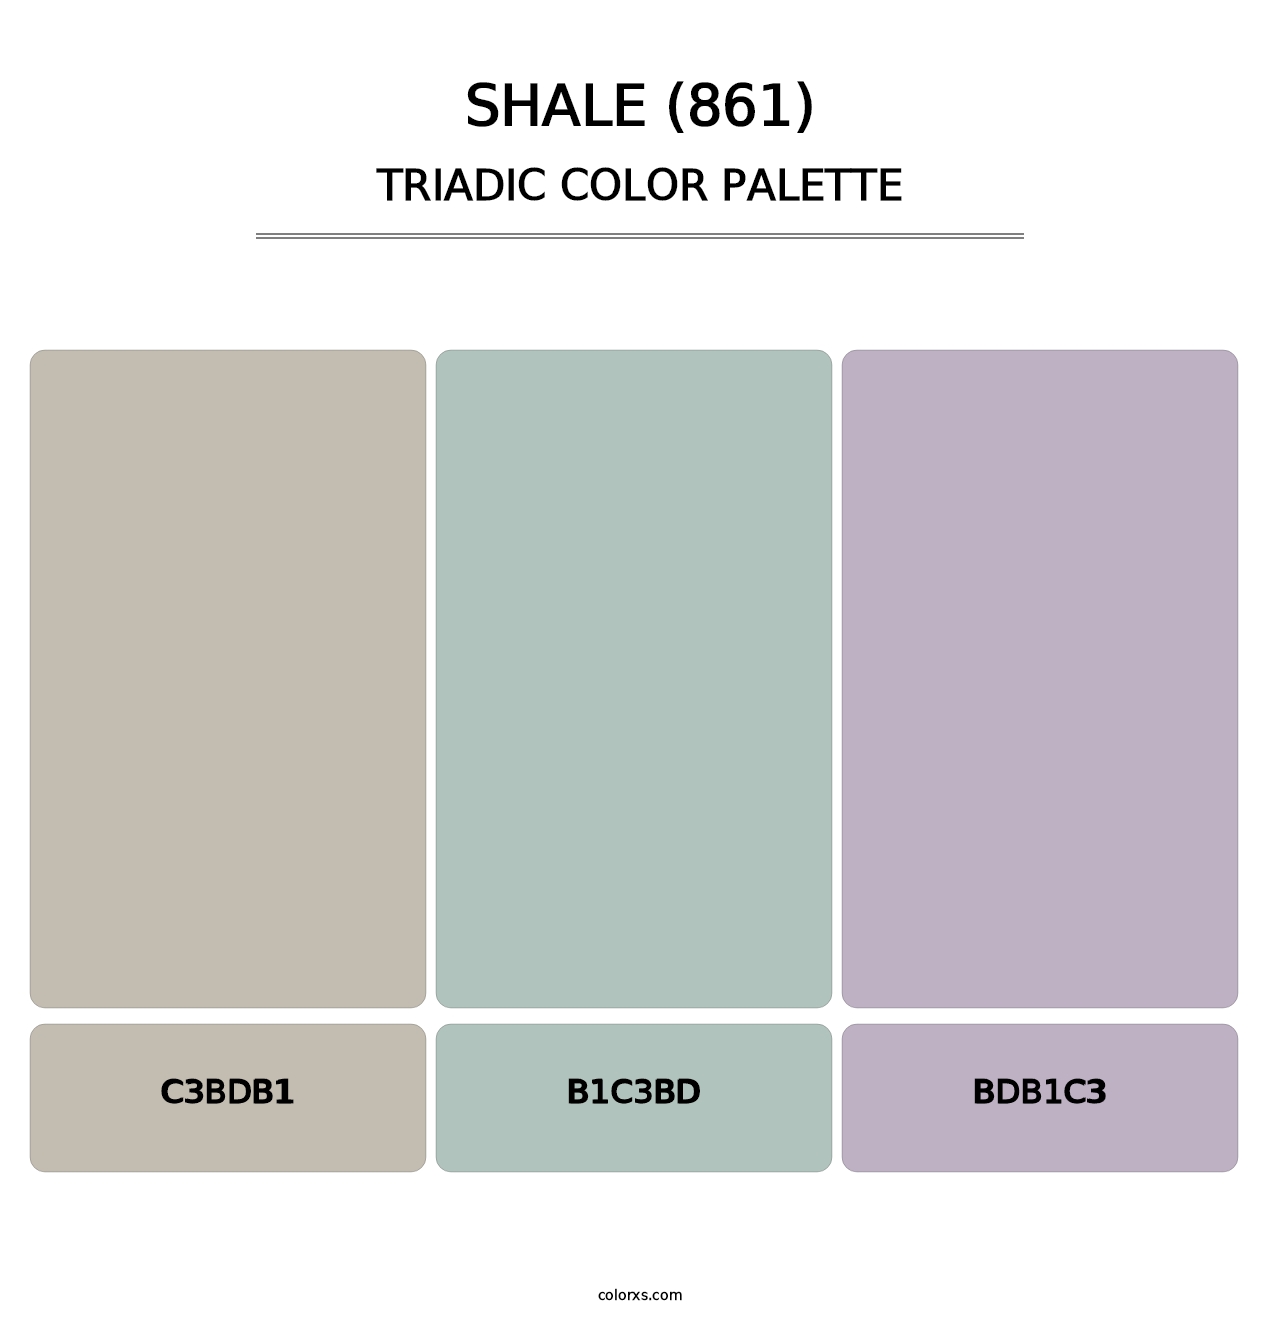 Shale (861) - Triadic Color Palette